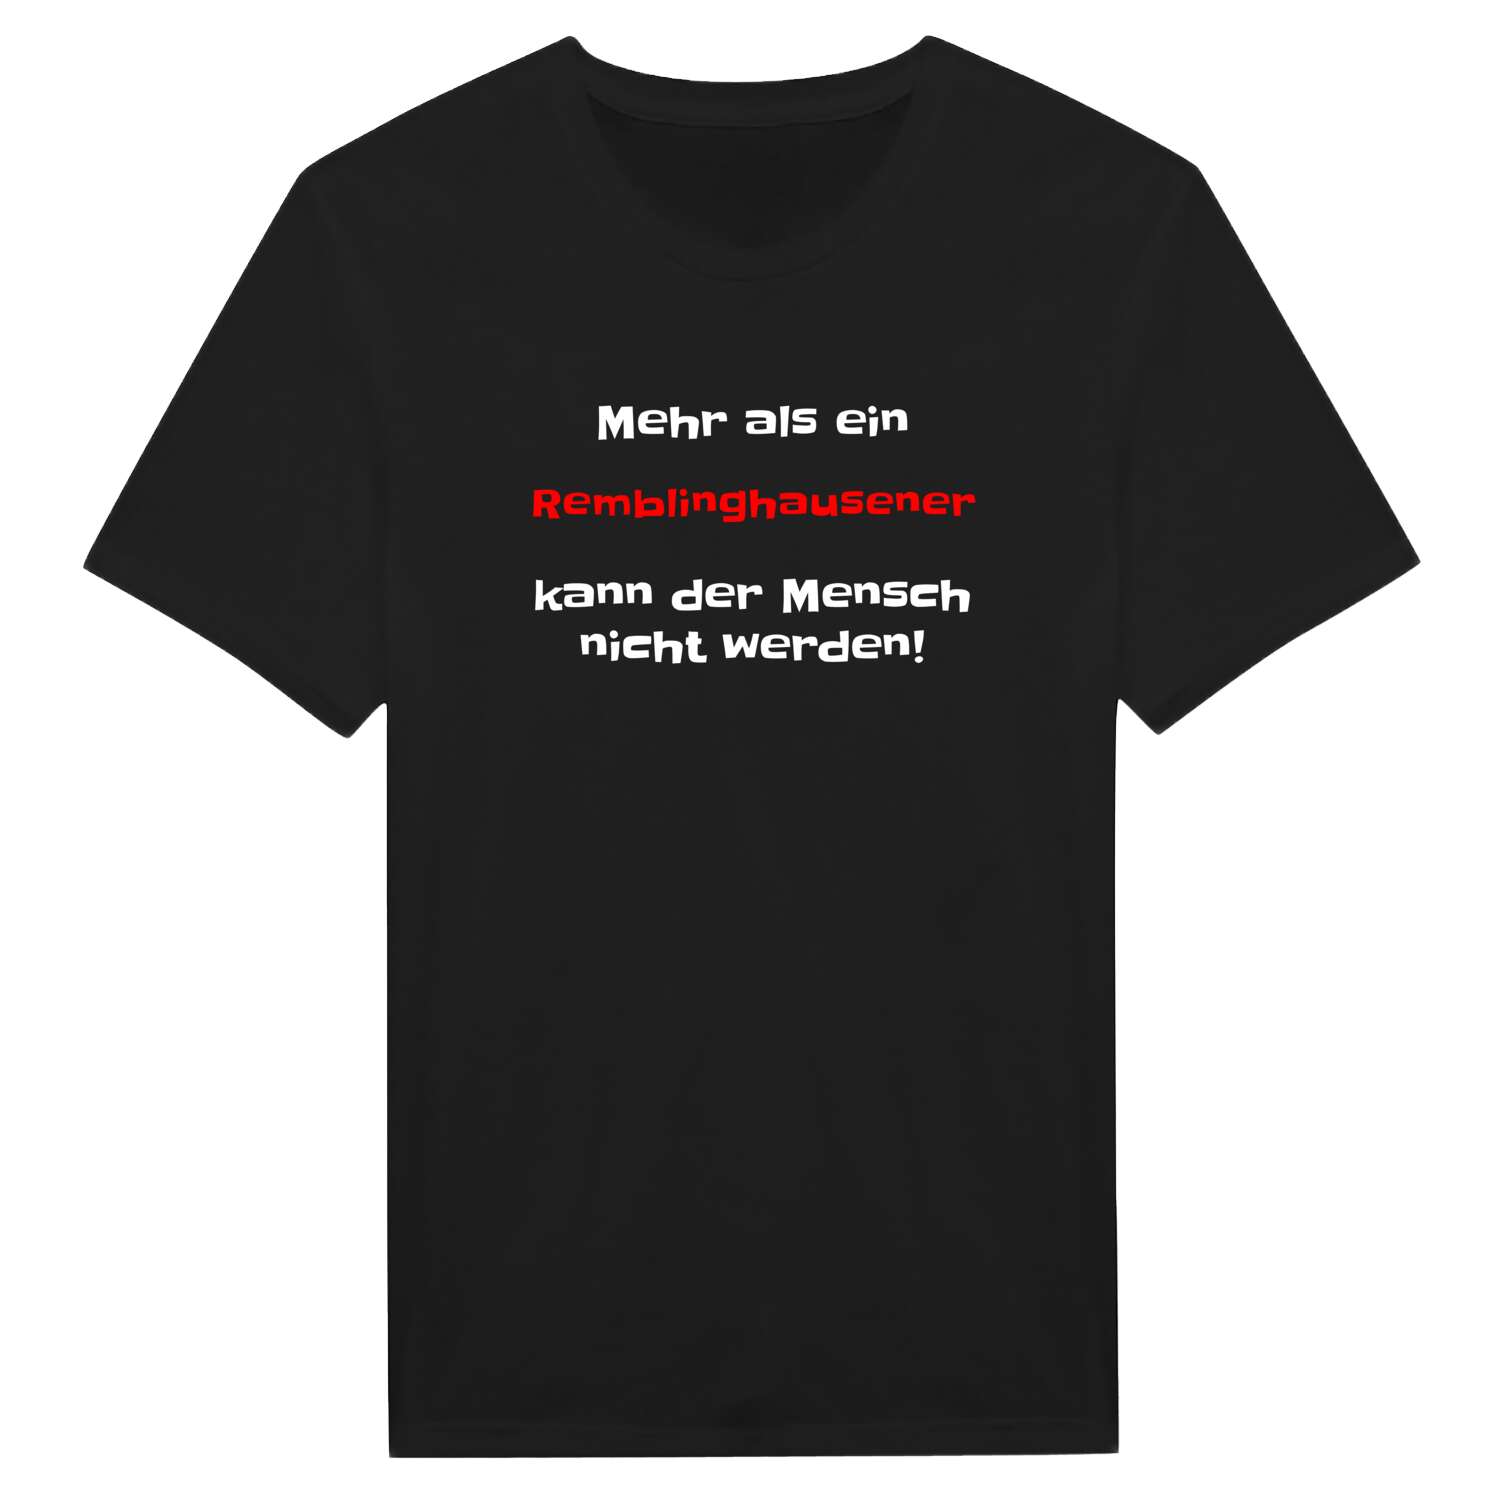 Remblinghausen T-Shirt »Mehr als ein«